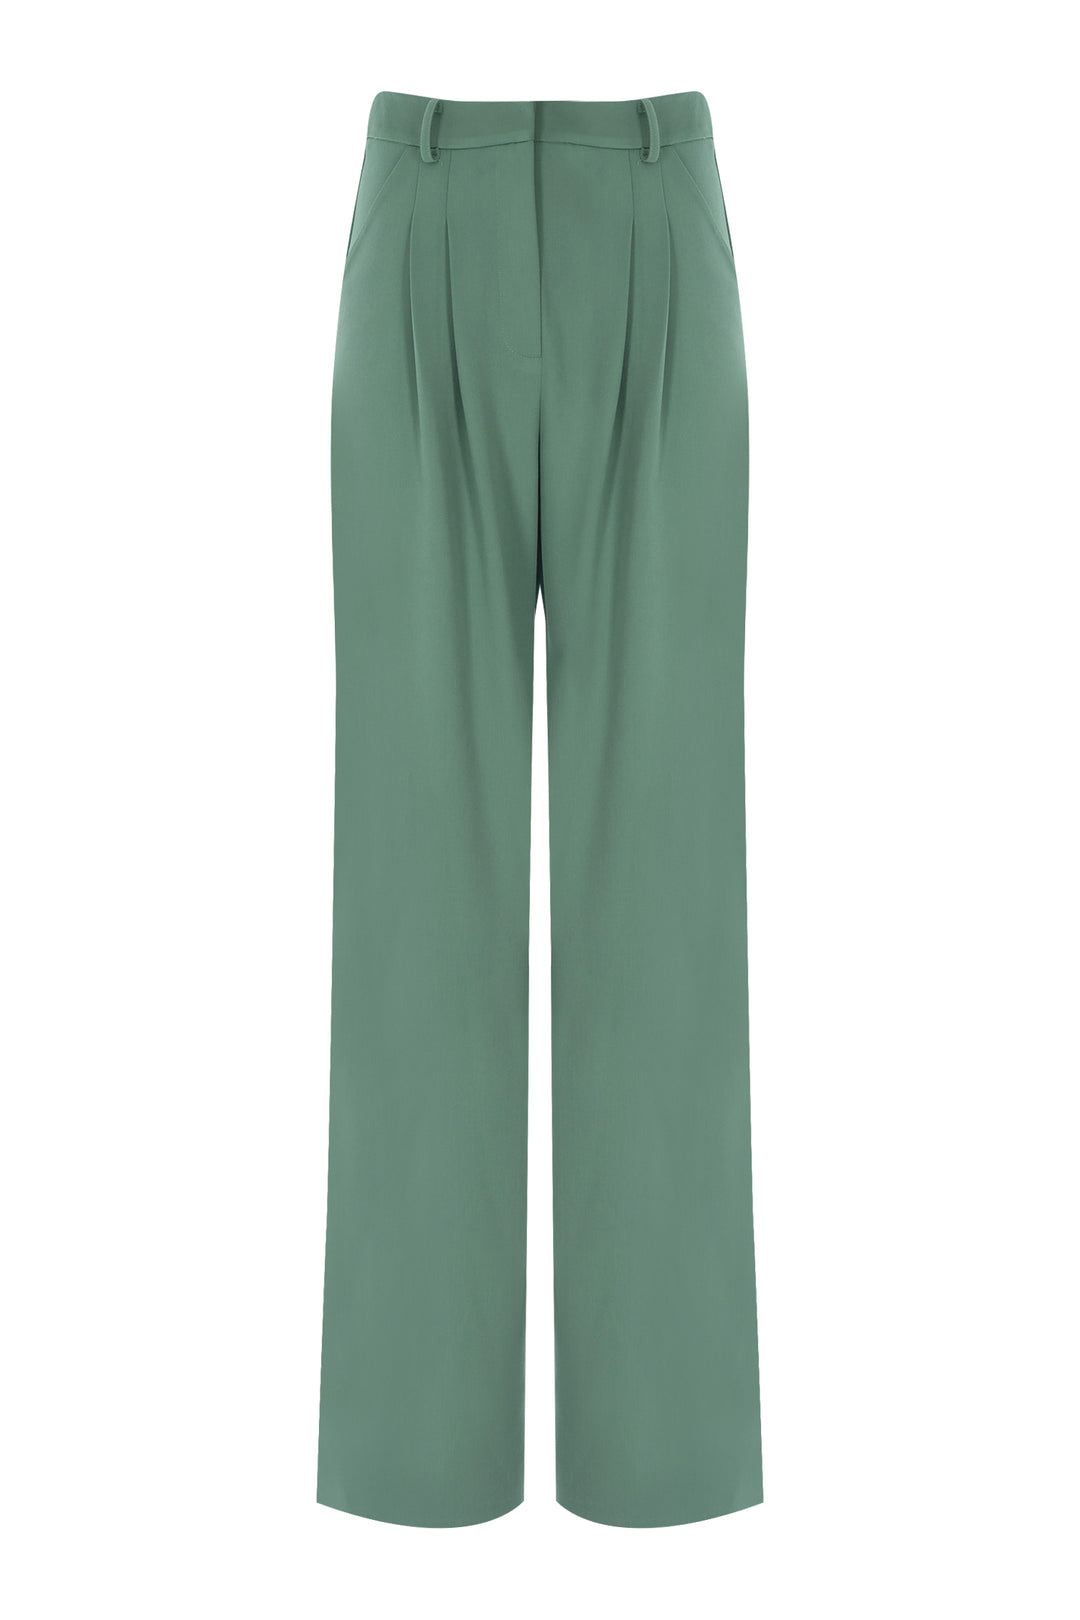 Soft Yeşil Yüksek Bel Pileli Pantolon